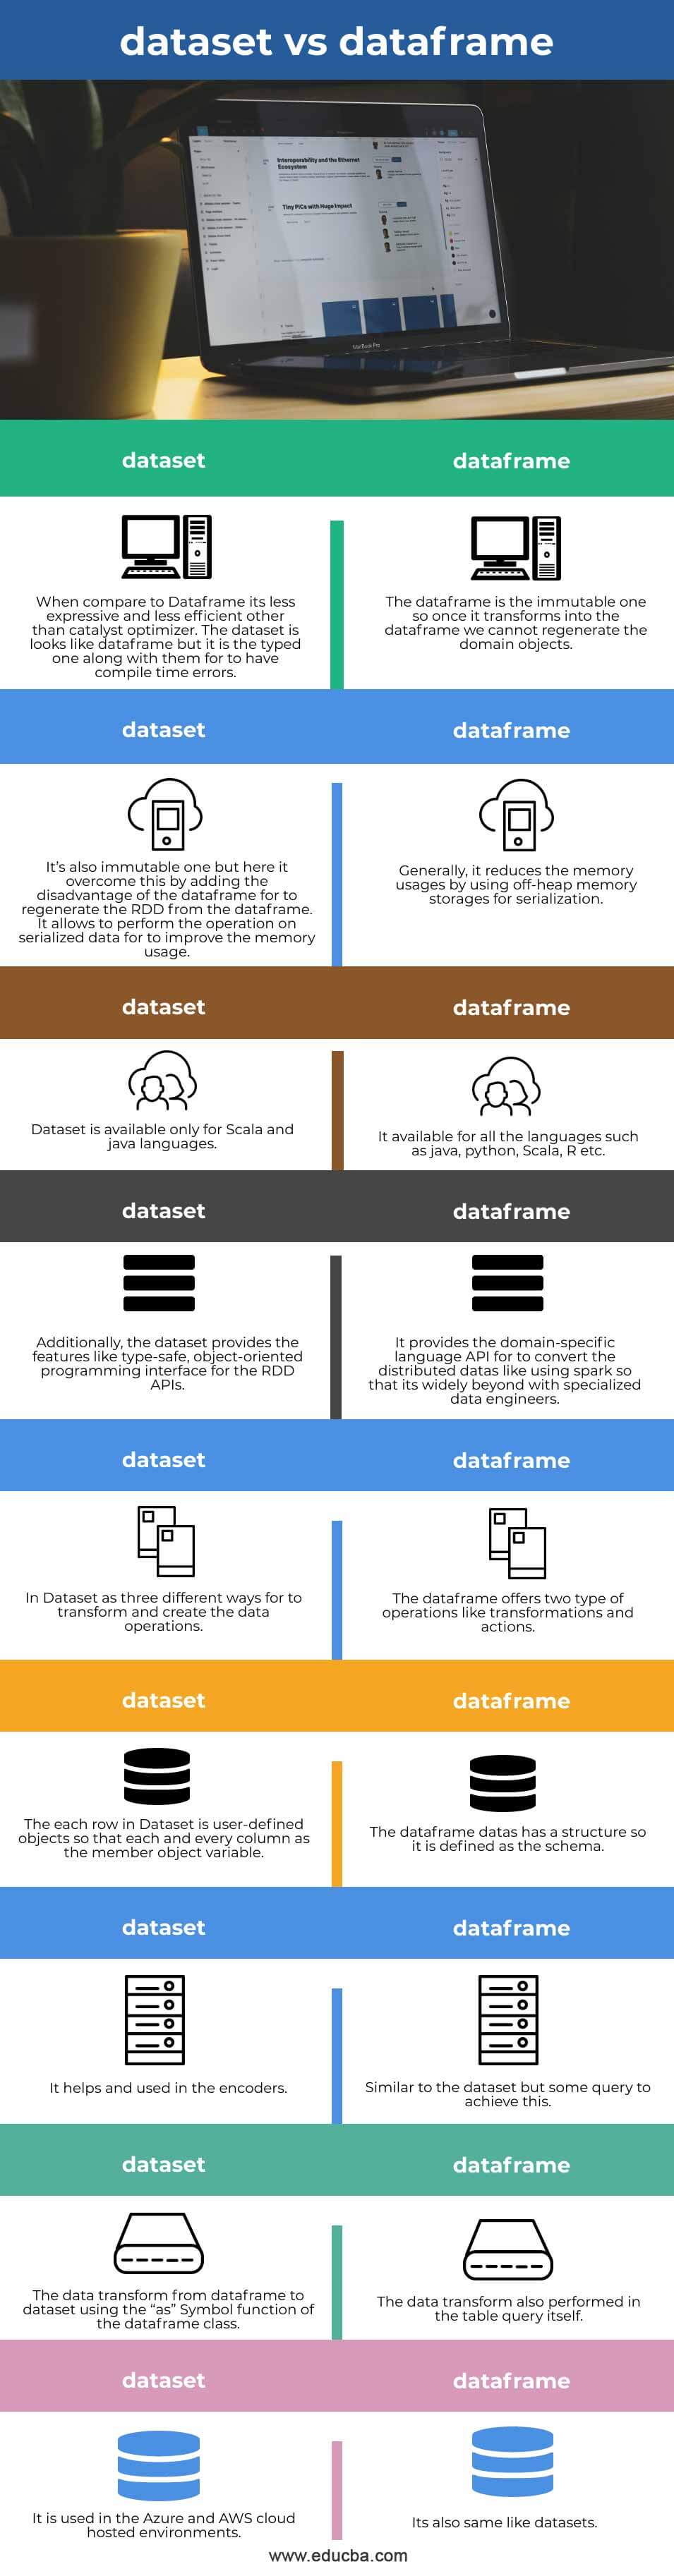 dataset-vs-dataframe-info